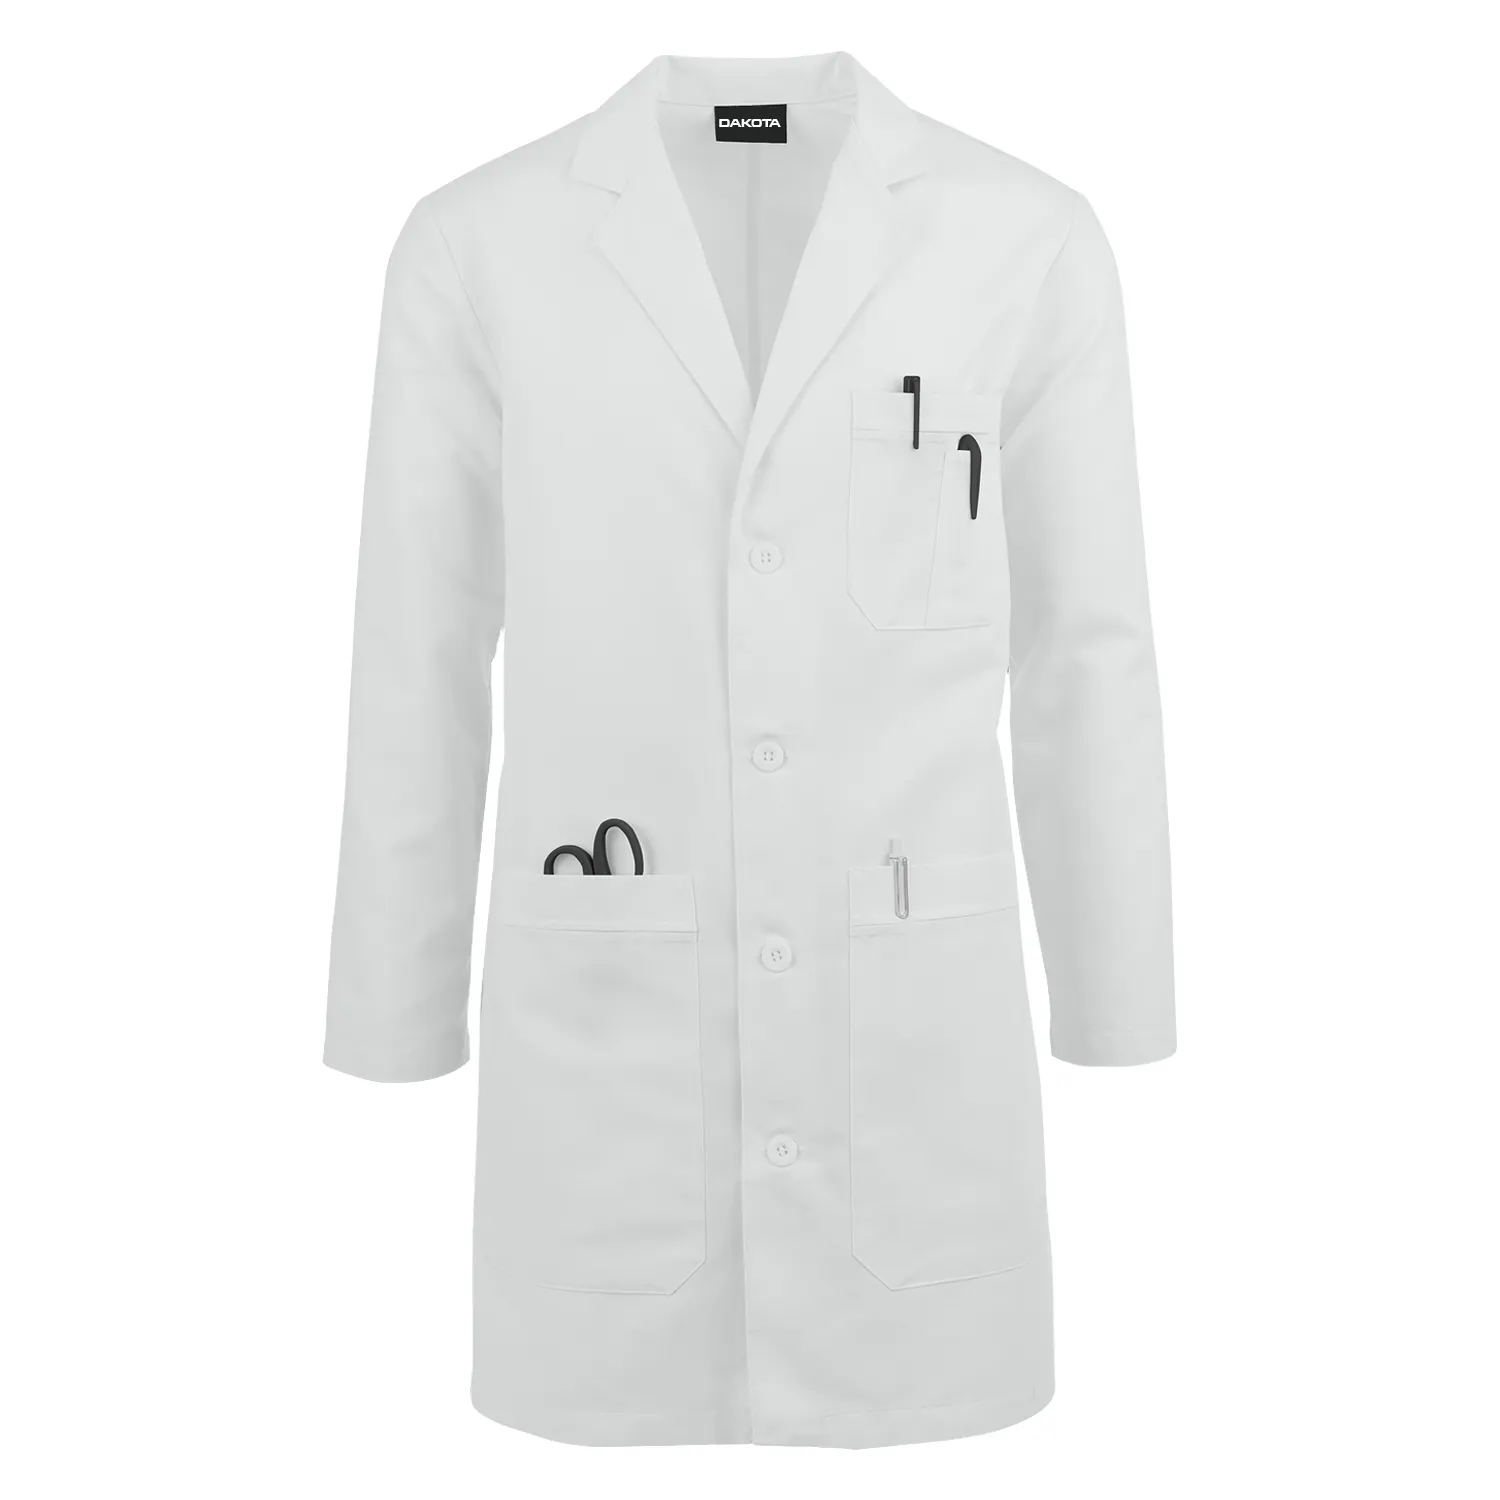 Venta al por mayor suave manga larga transpirable unisex multi bolsillos batas de laboratorio médico uniforme abrigos